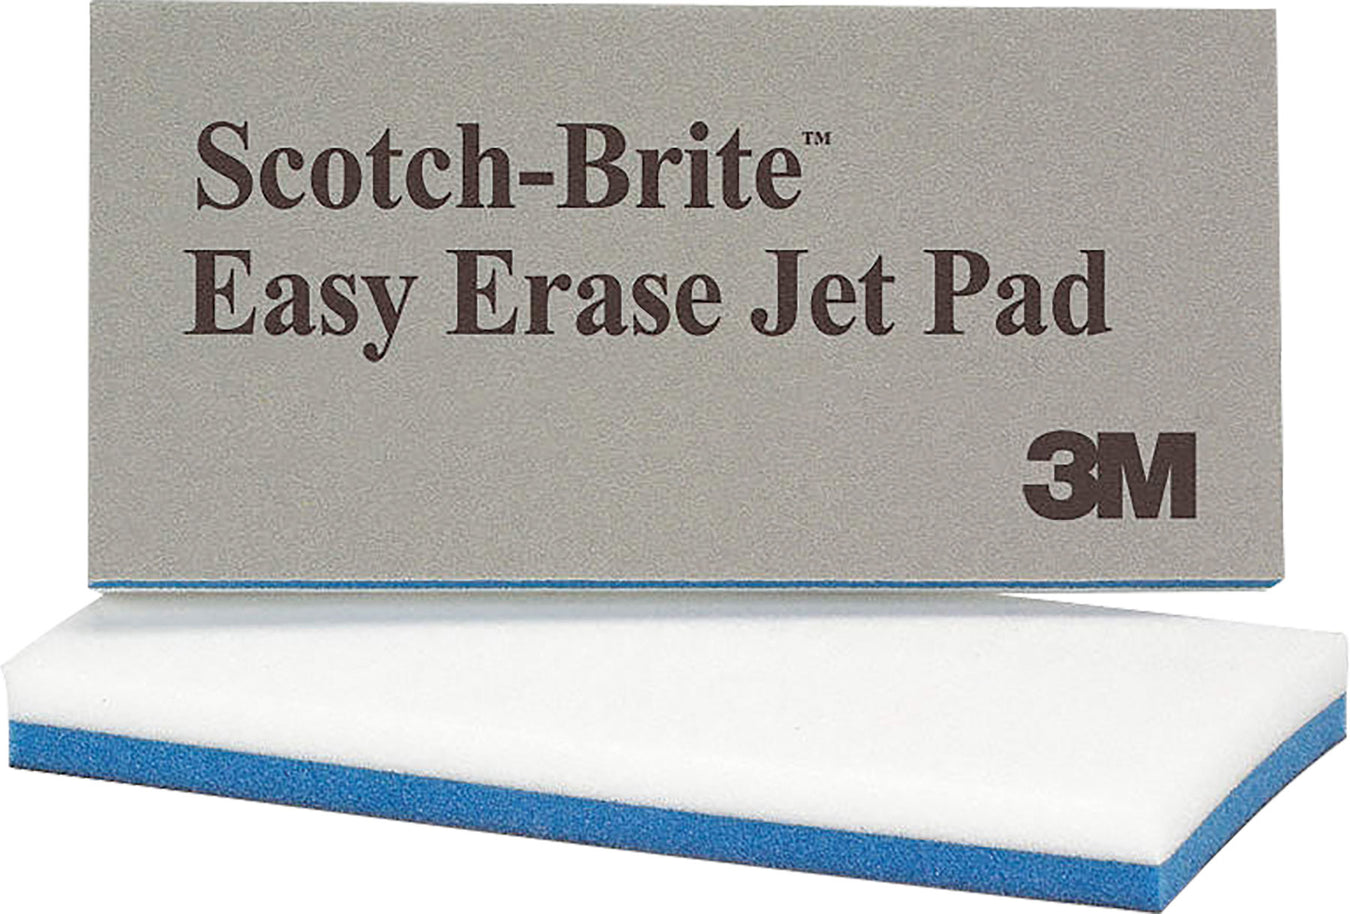 Easy Erase Jet Pad